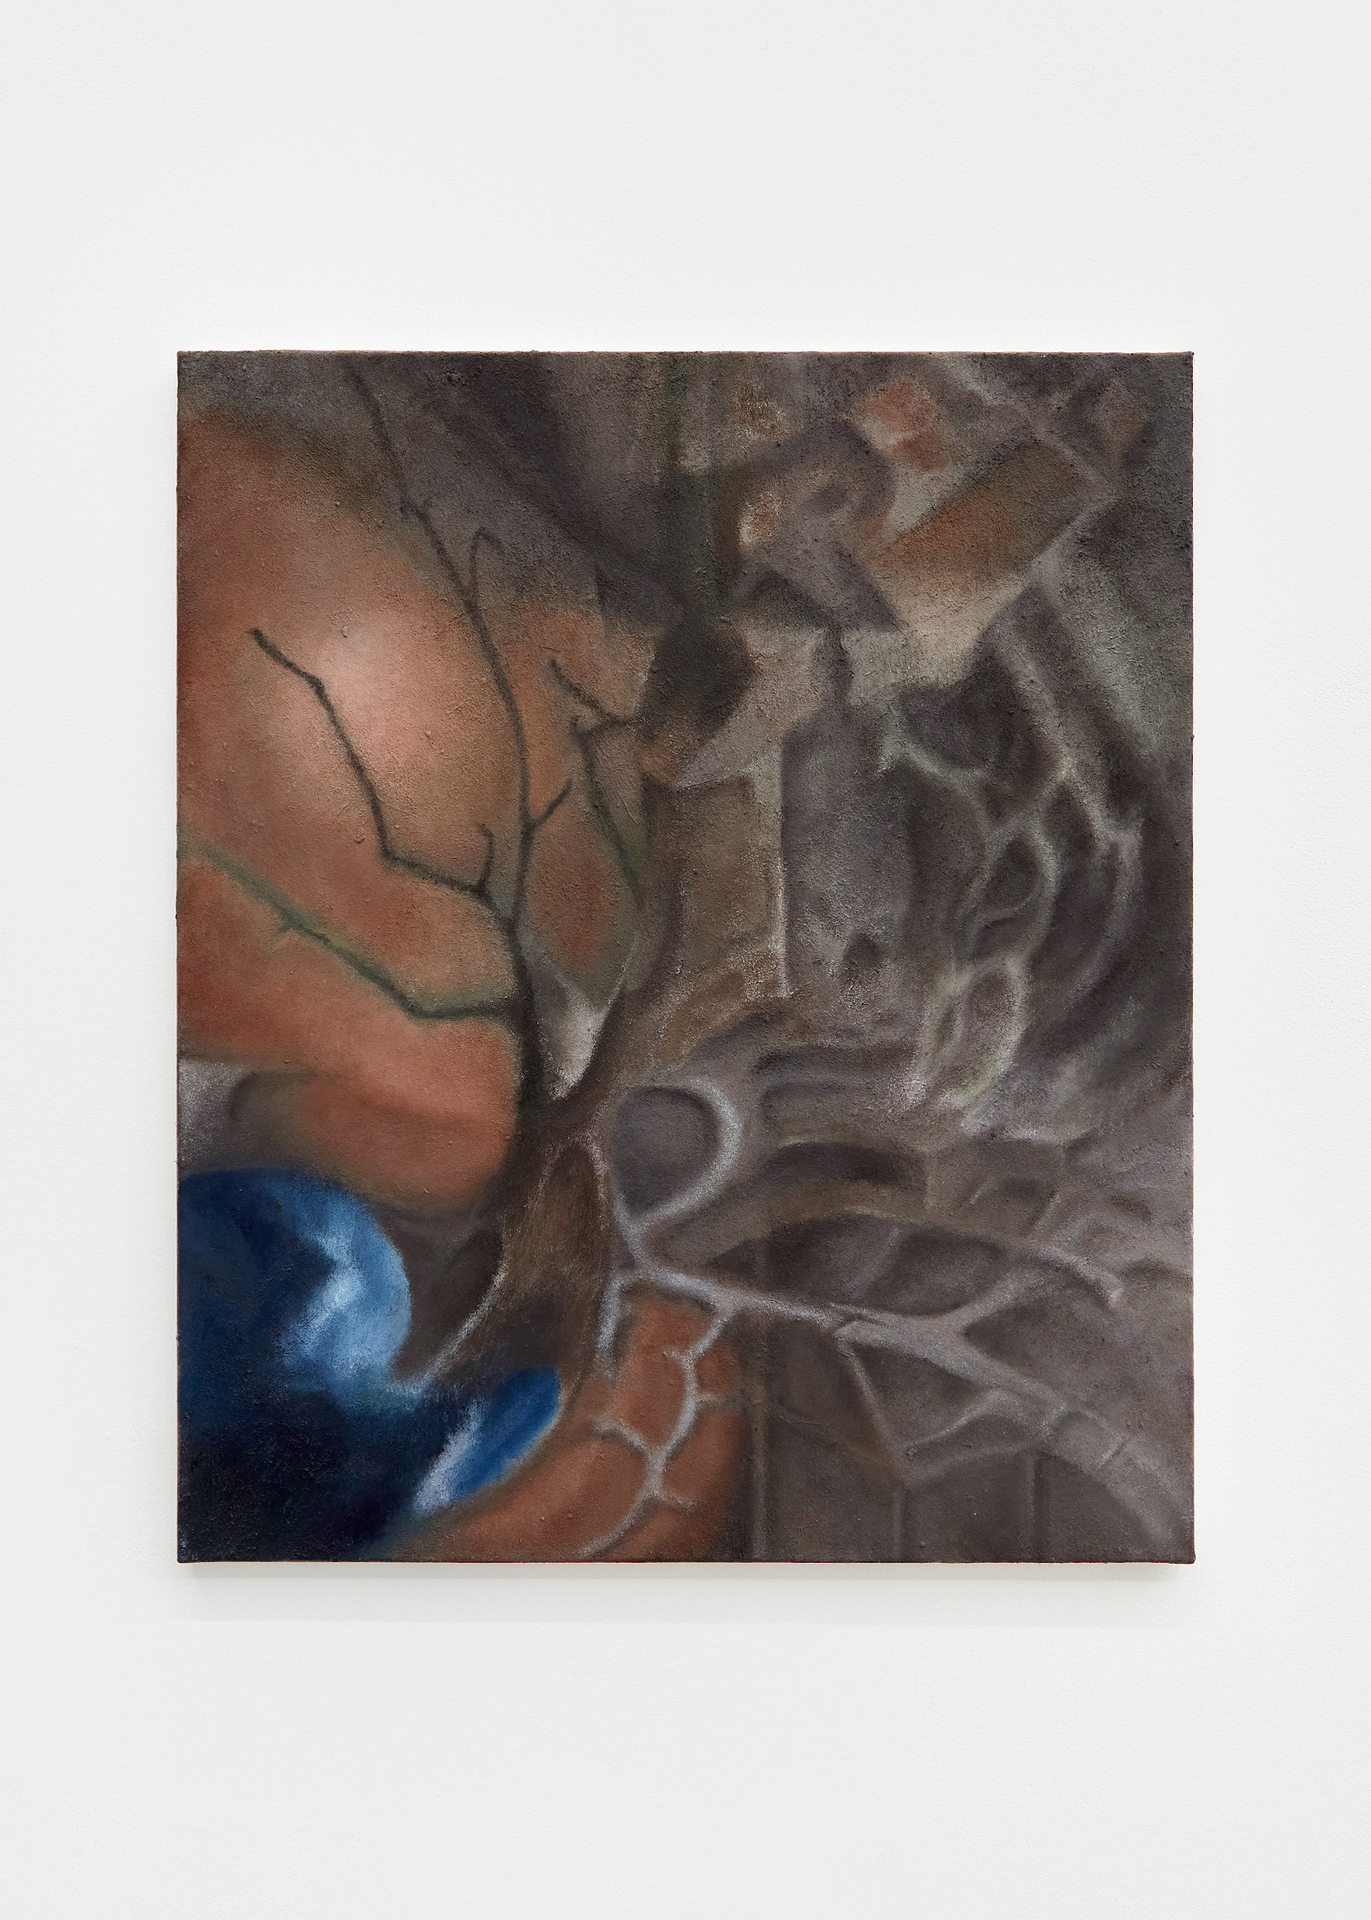 Terior, 2020. Oil on canvas, 60 x 50cm